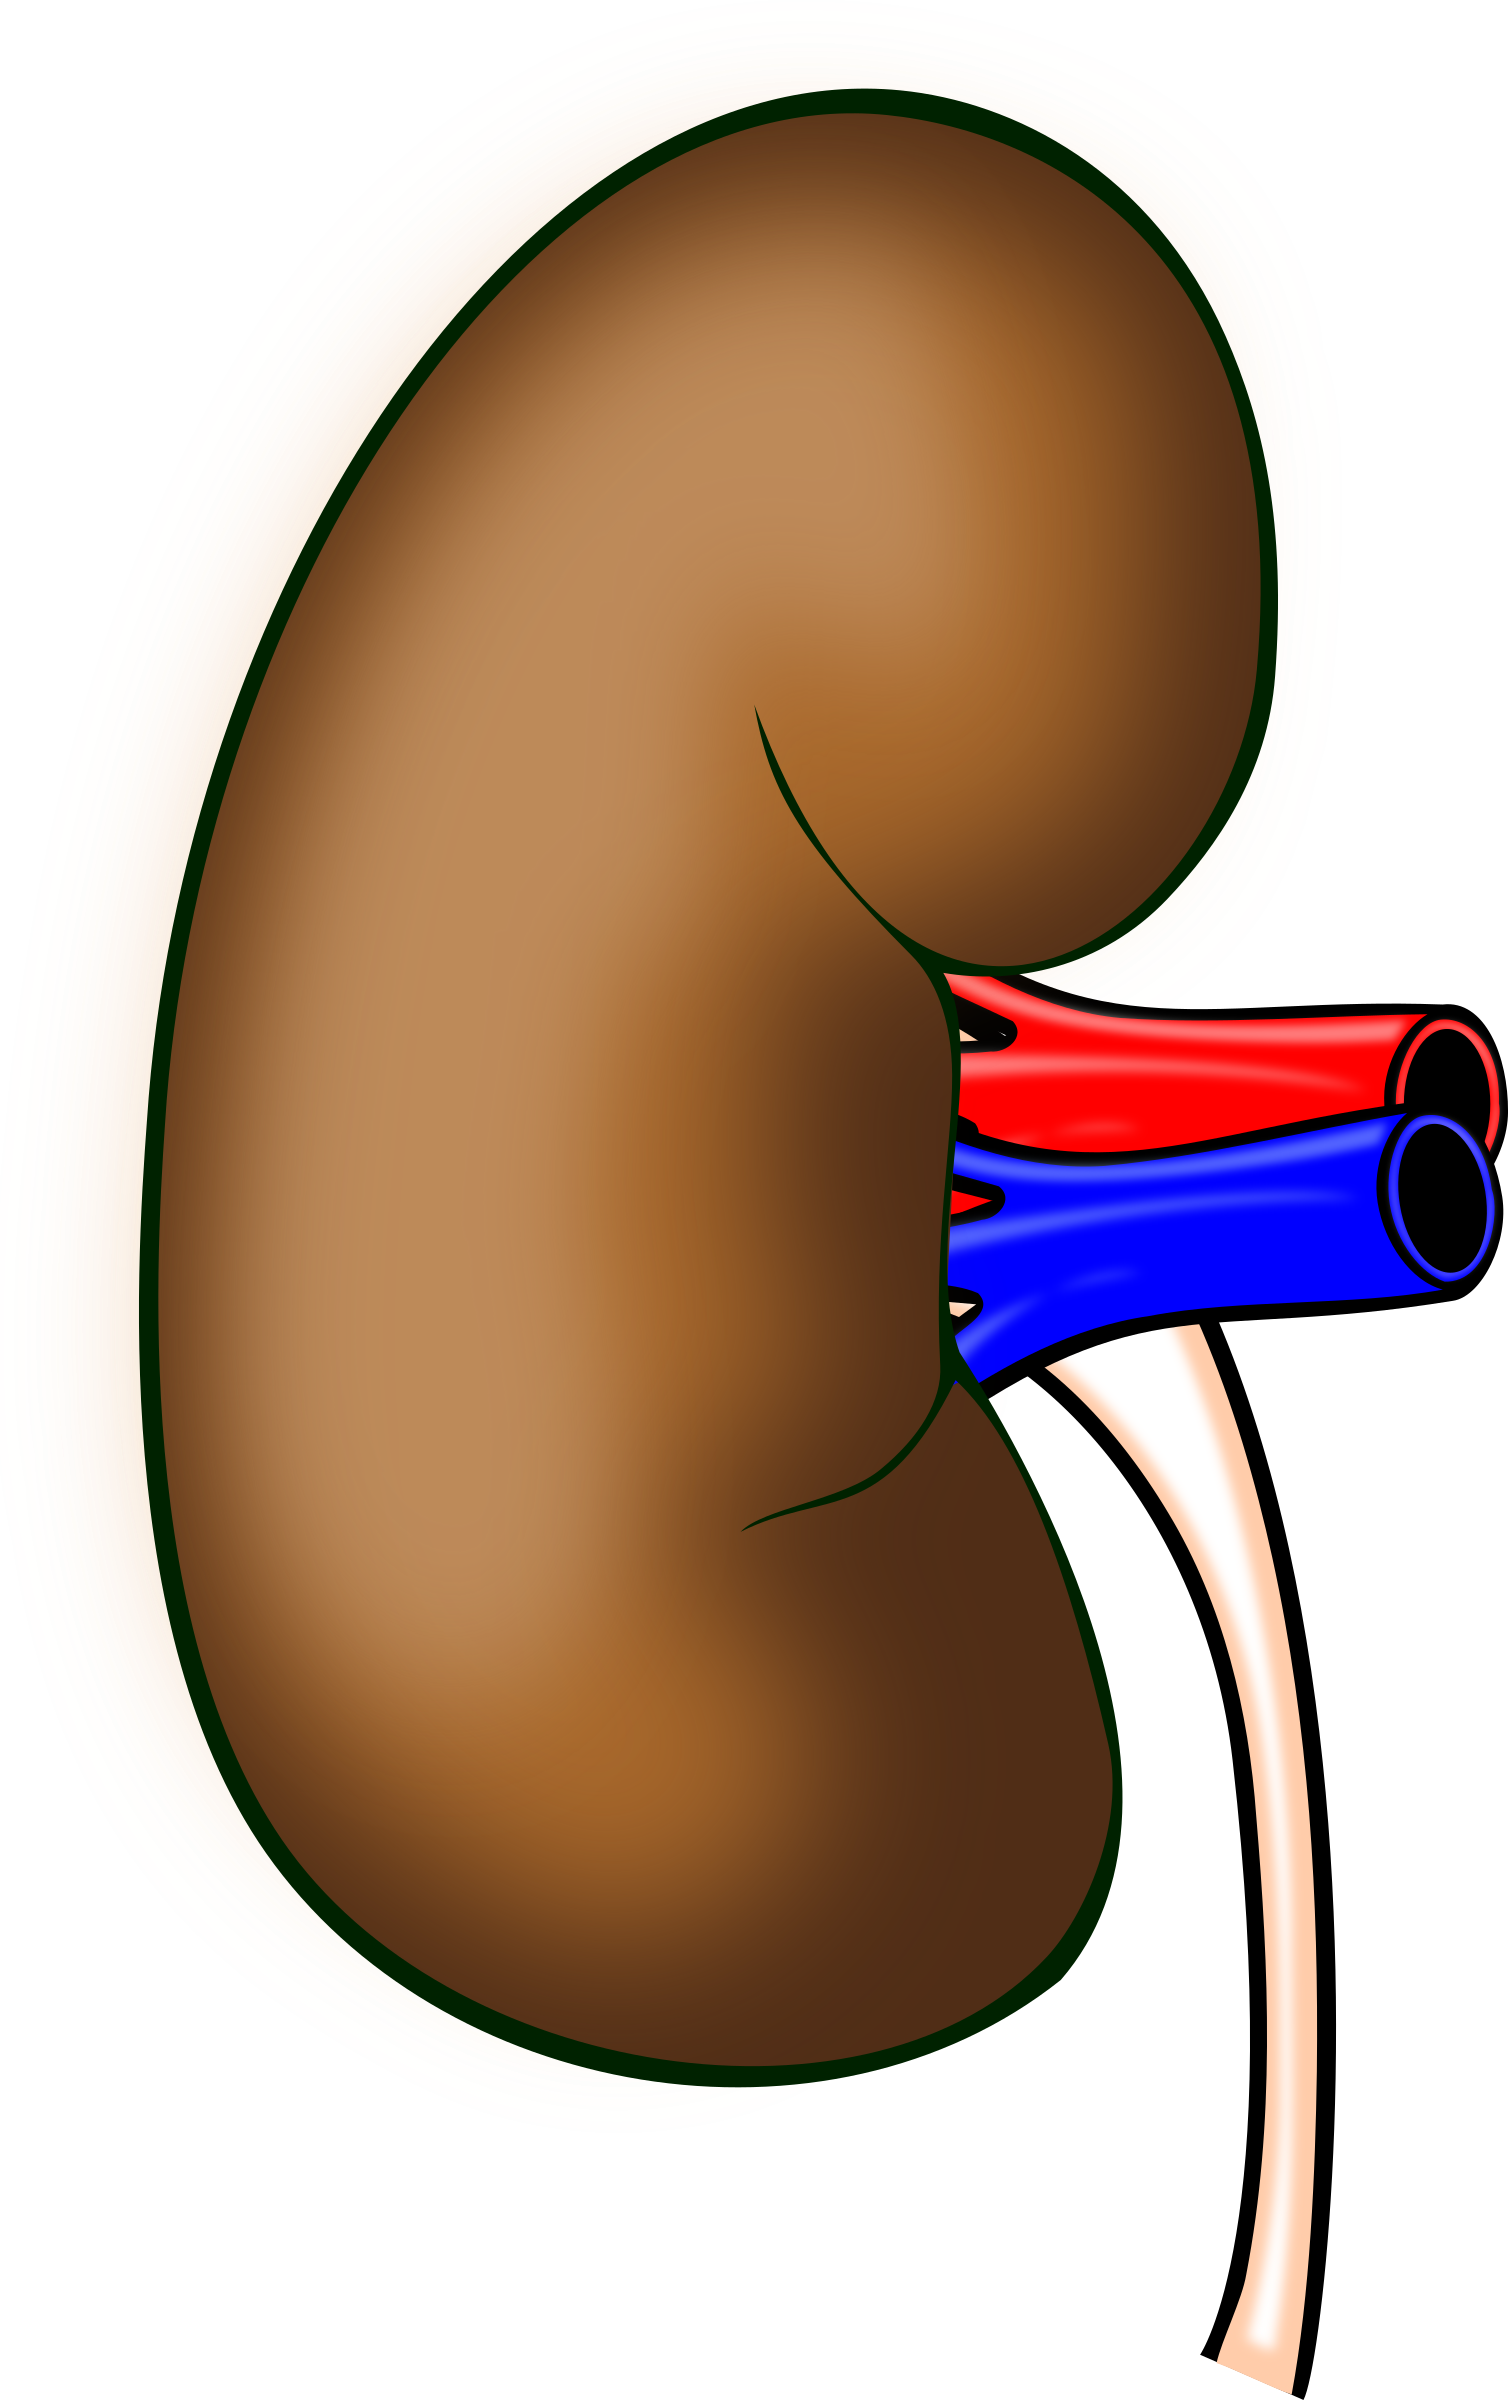 kidney clipart human kidney